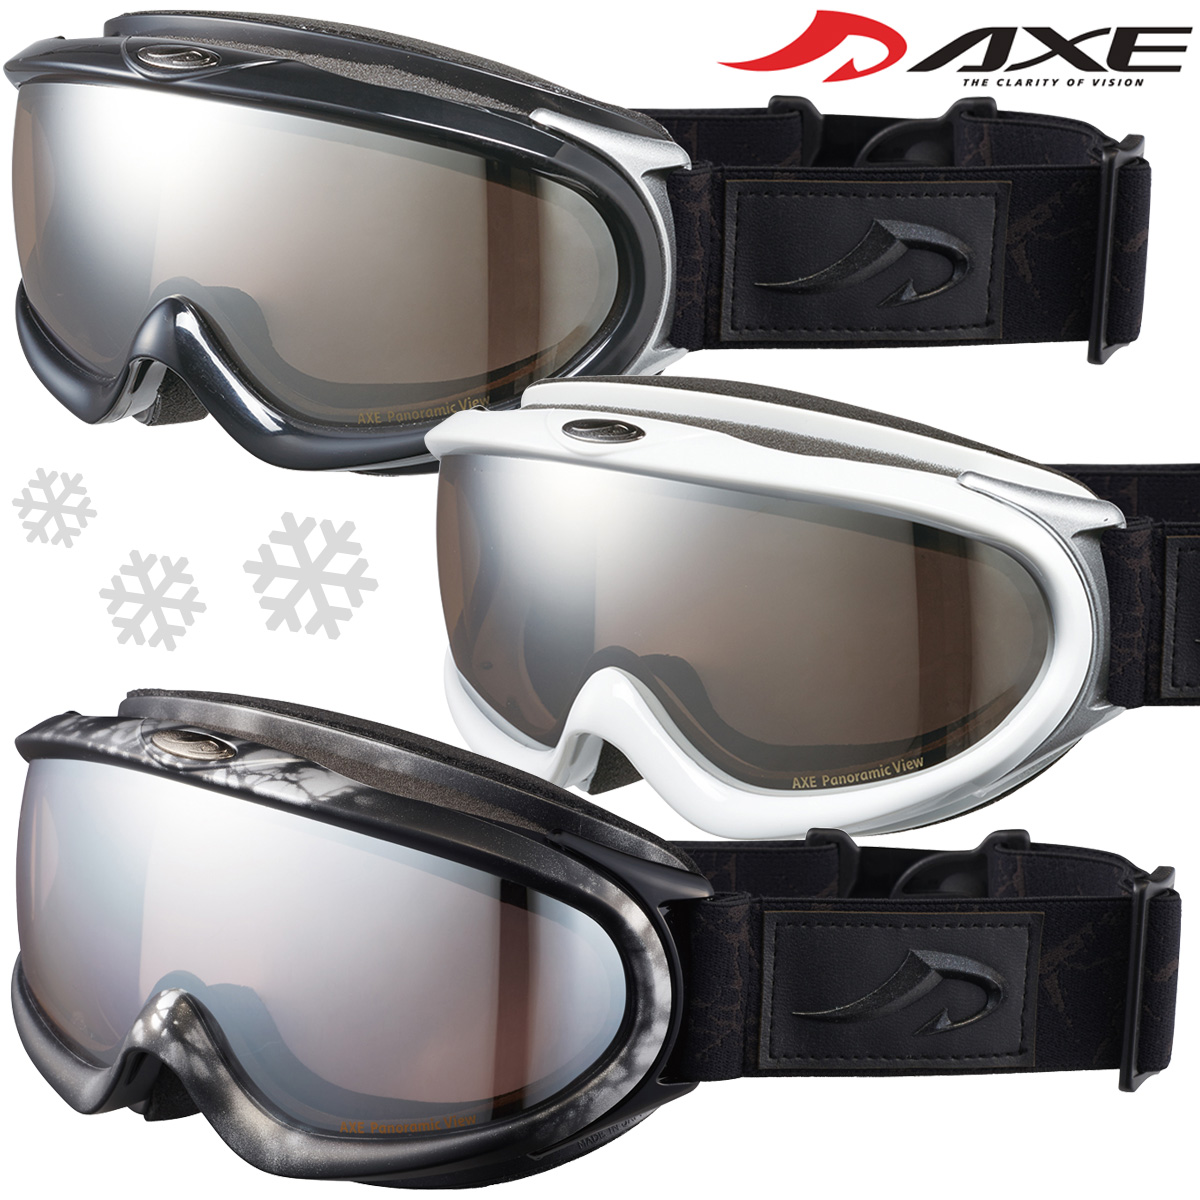 ダブルレンズ 眼鏡対応 スキー スノーボード スノーゴーグル ゴーグル メガネ対応 ヘルメット対応 アックス AXE AX888-WMD 人気 曇り止め機能付き 2021-22モデル 誕生日/お祝い 大型メガネ対応 メンズ